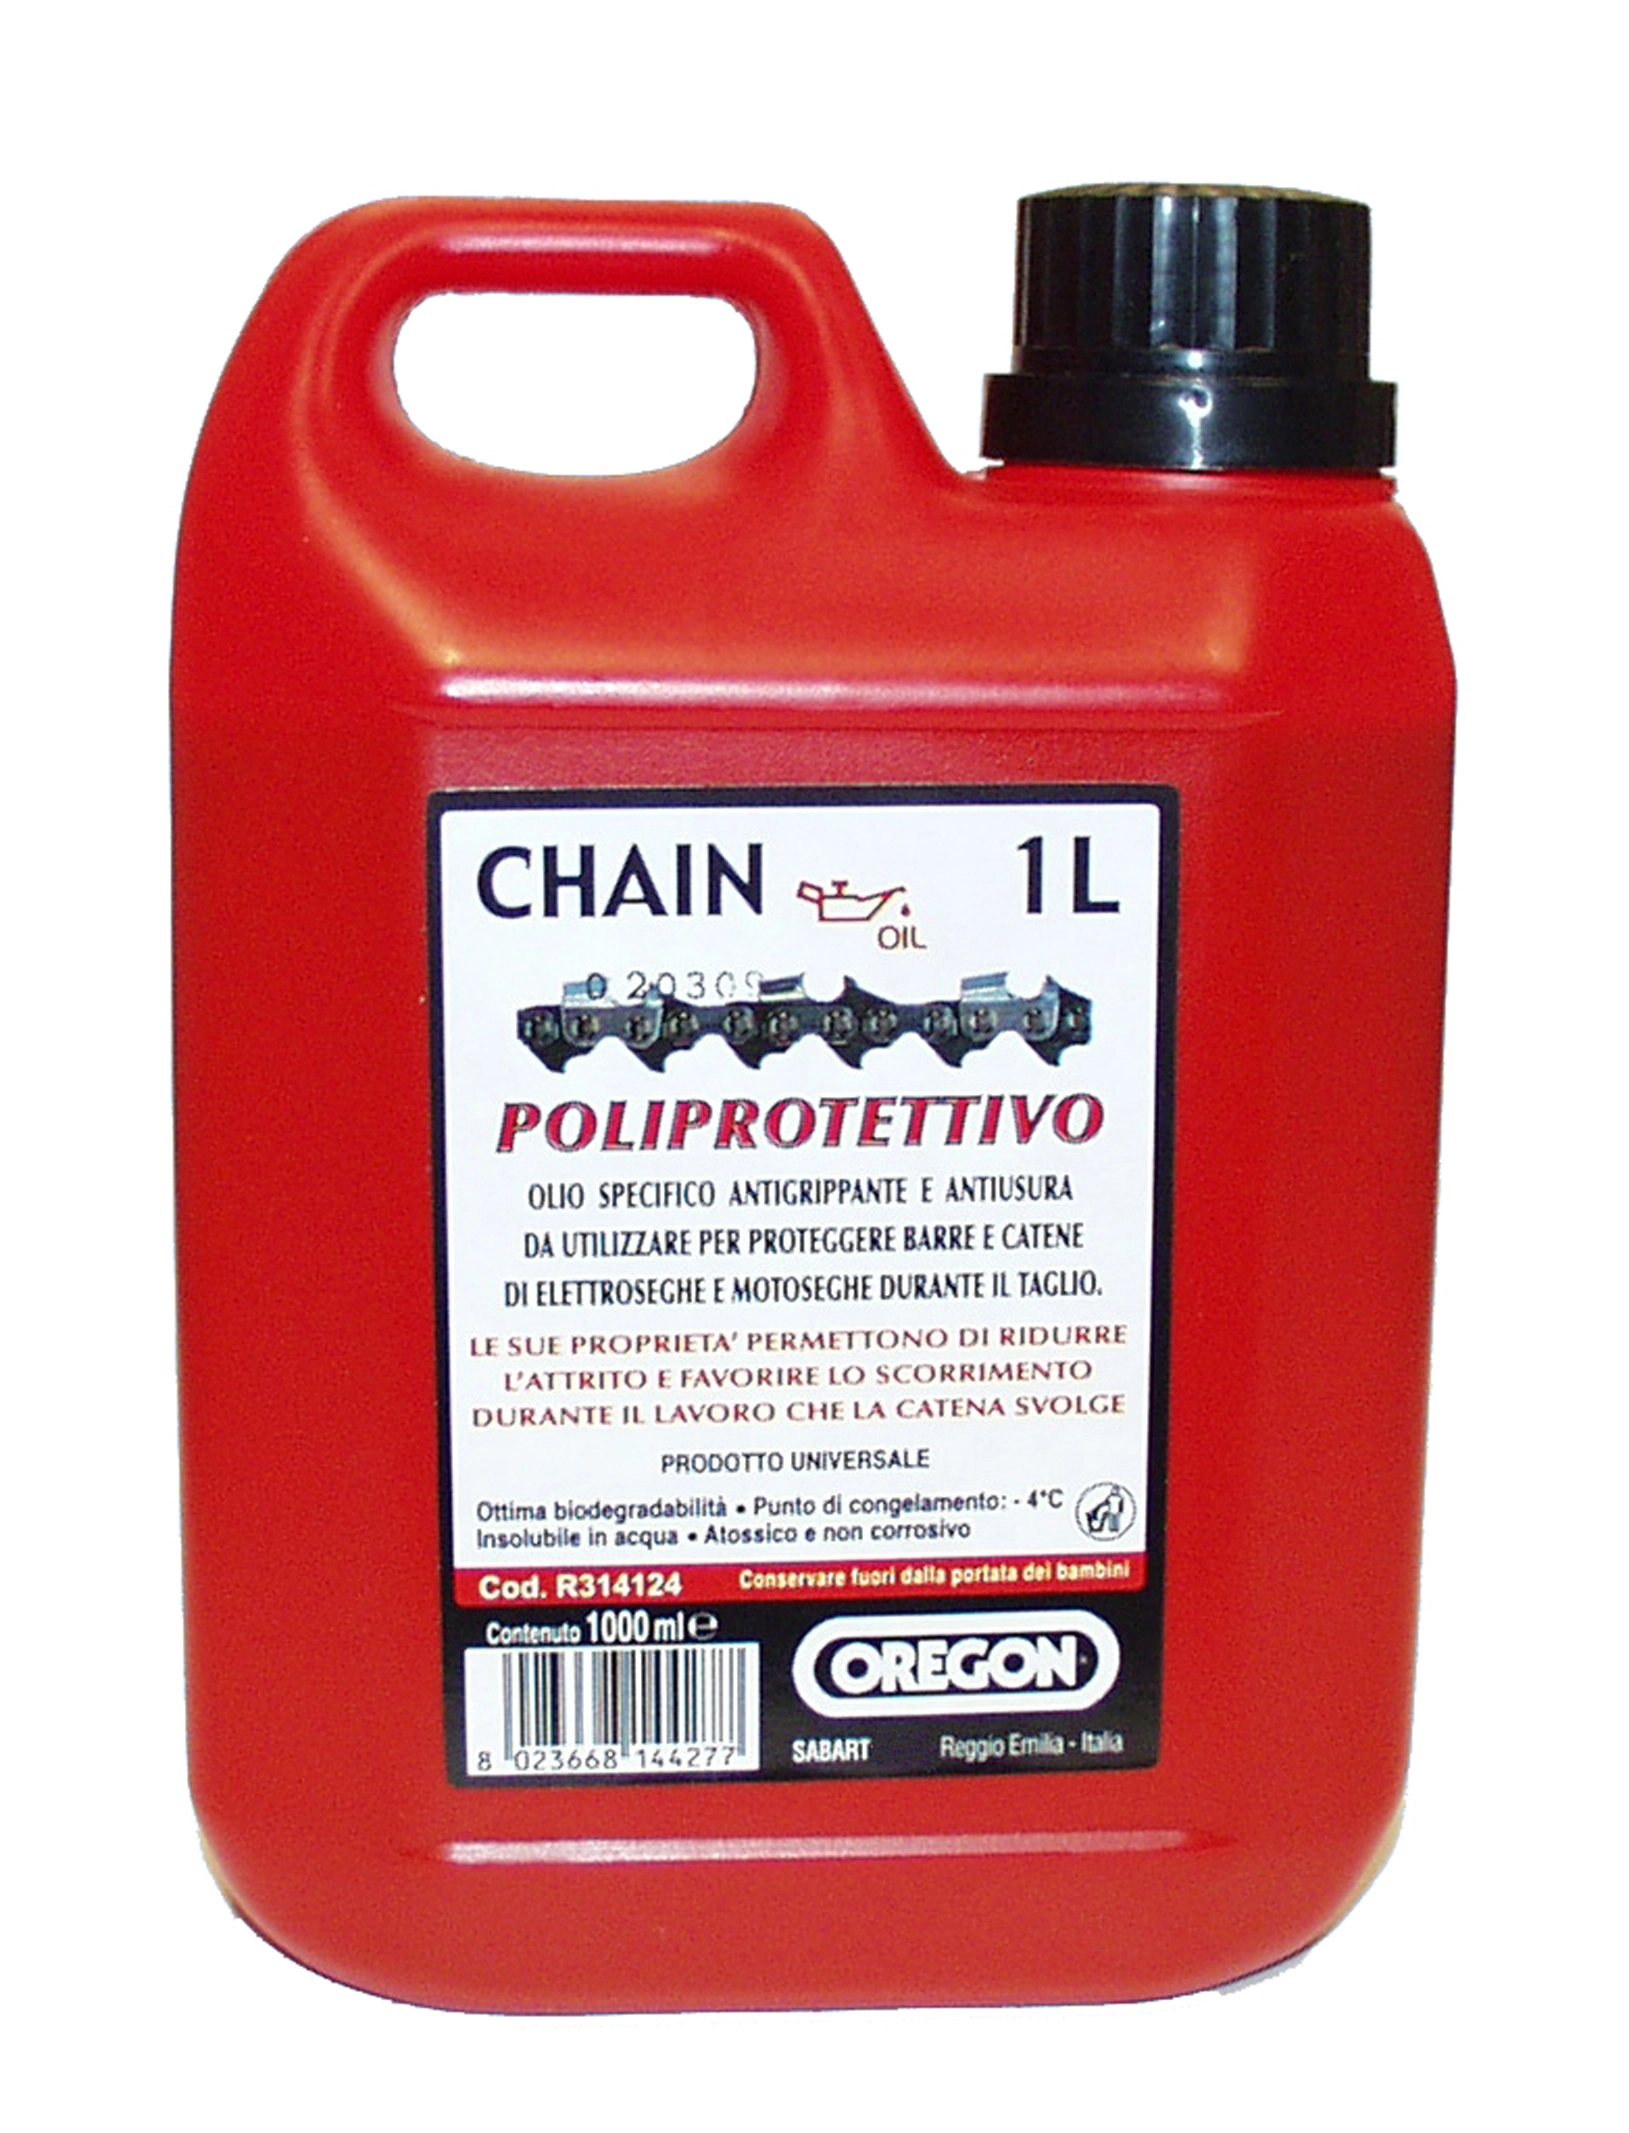 Oregon olio poliprotettivo 70 lubrificazione catene motoseghe-elettroseghe  1 l